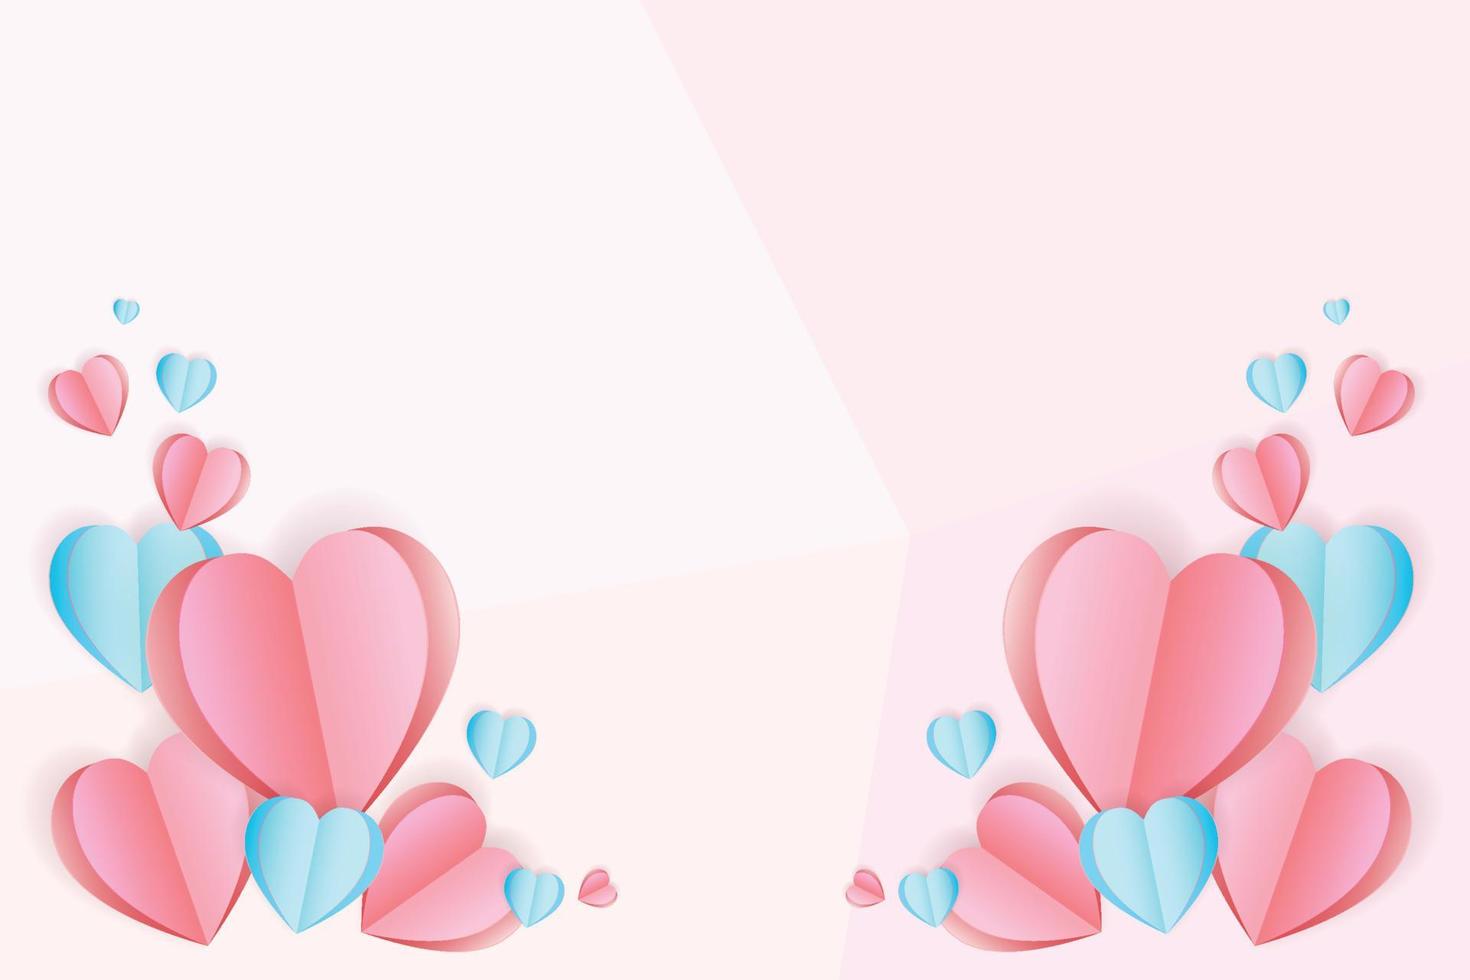 papier coupé fond forme de coeur rose, illustration pour la Saint-Valentin, la fête des mères ou la journée de l'amour, carte de voeux vectorielle. vecteur